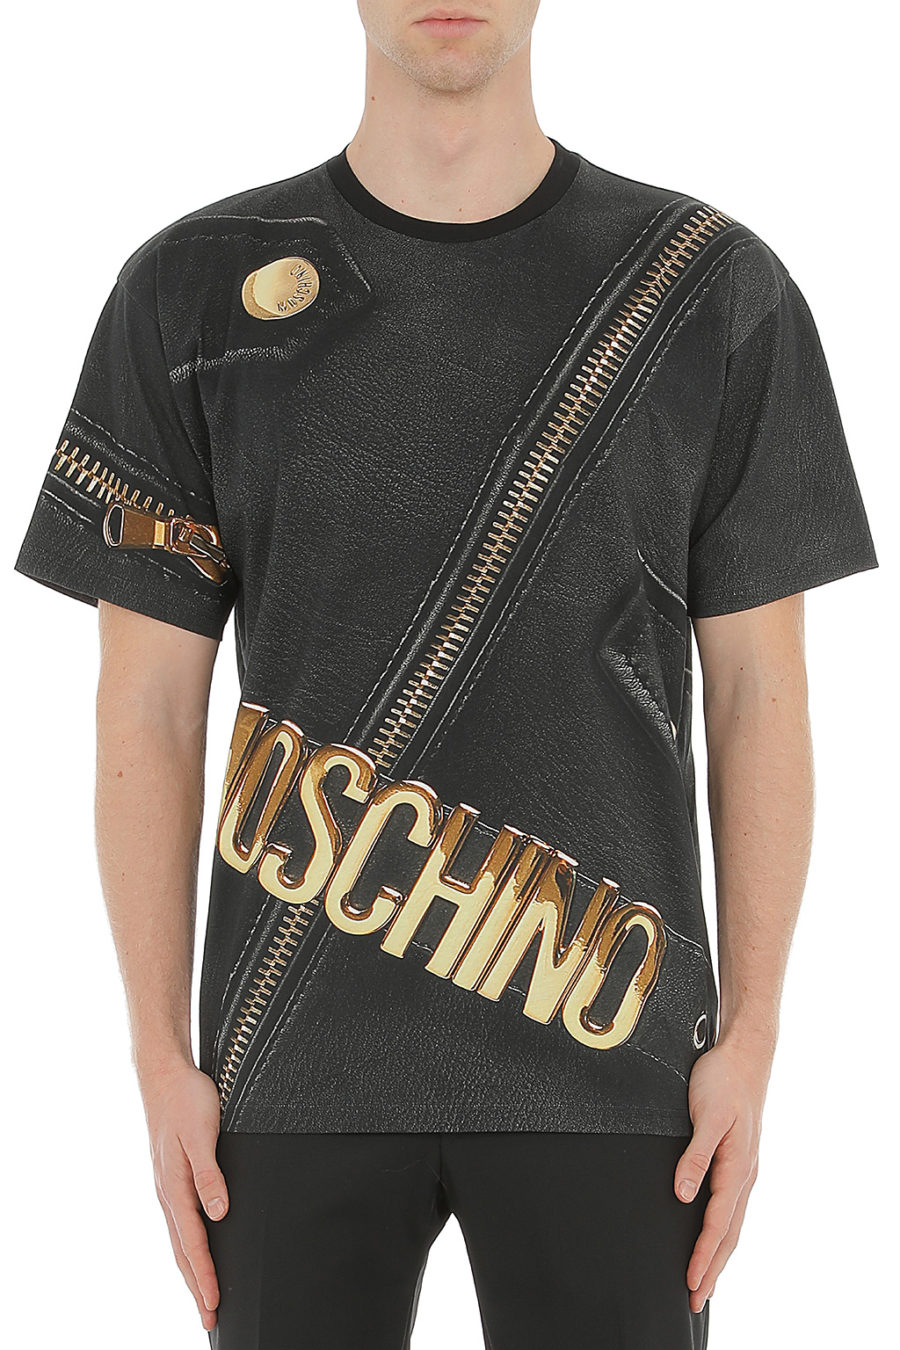 T-shirt Moschino Couture preta com fecho dourado - 0709 5240 1888